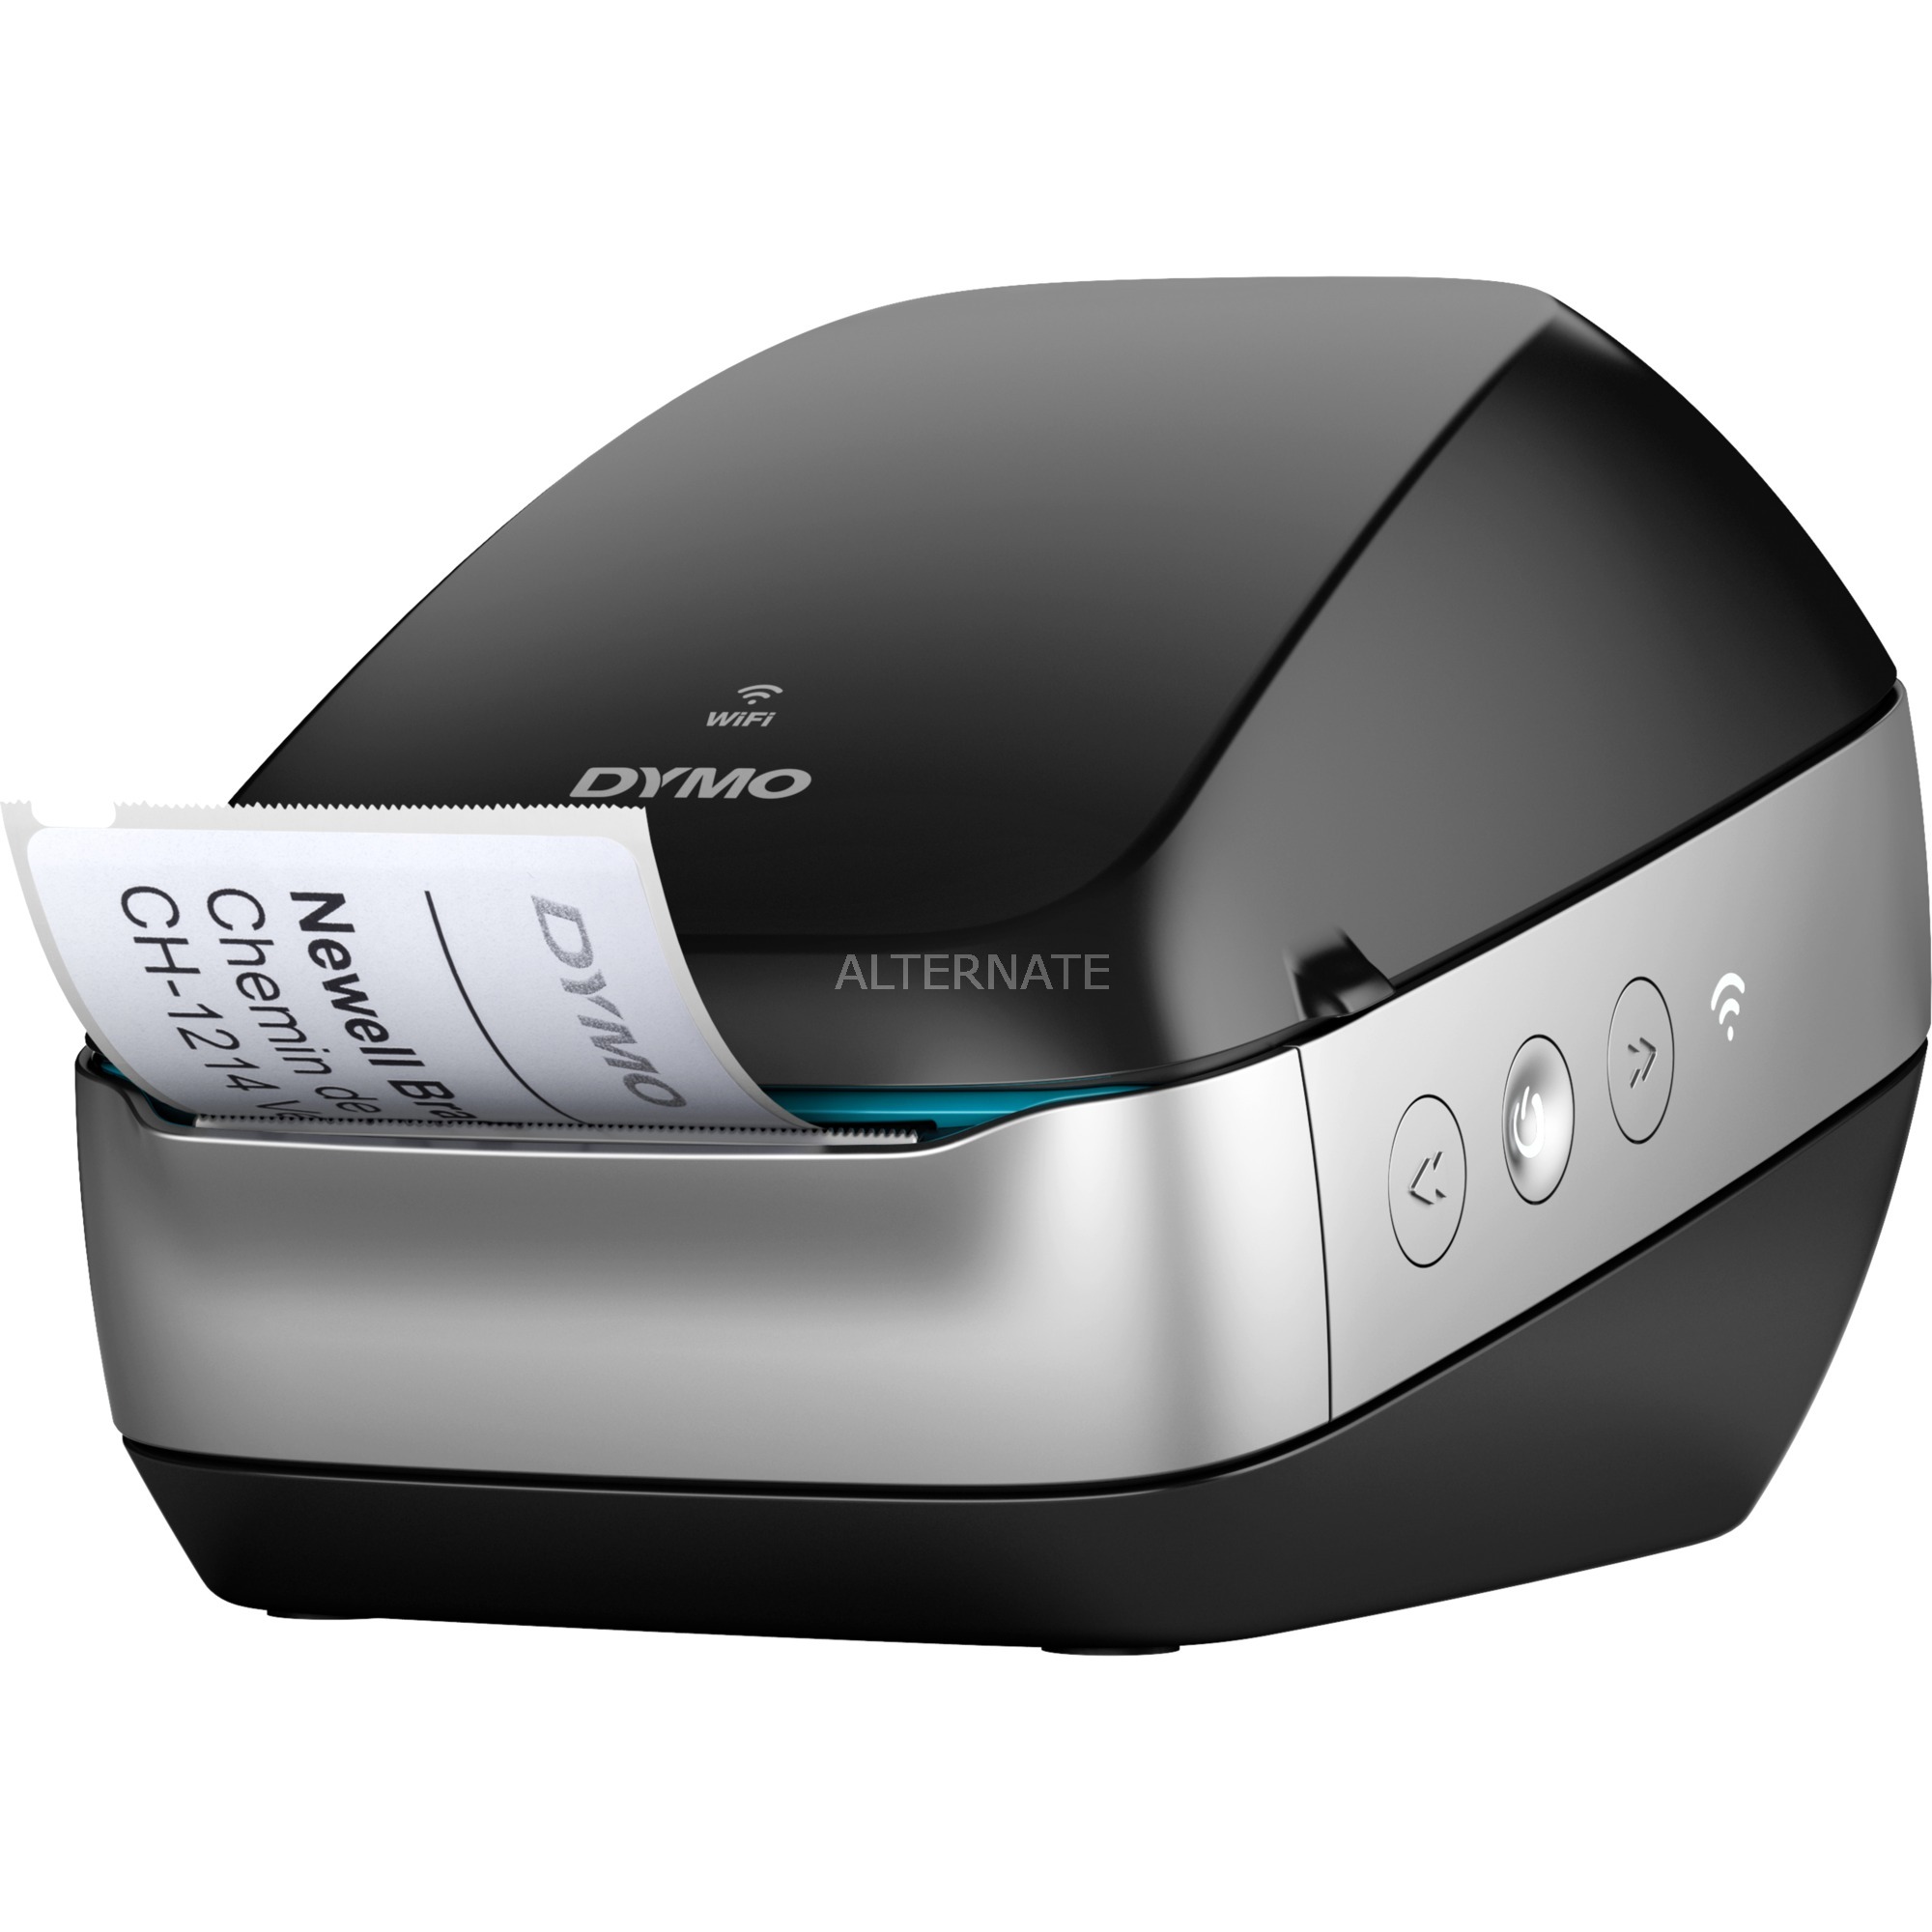 LabelWriter Wireless drukarka etykiet bezpo?rednio termiczny 600 x 300 DPI, Drukarki etykiet